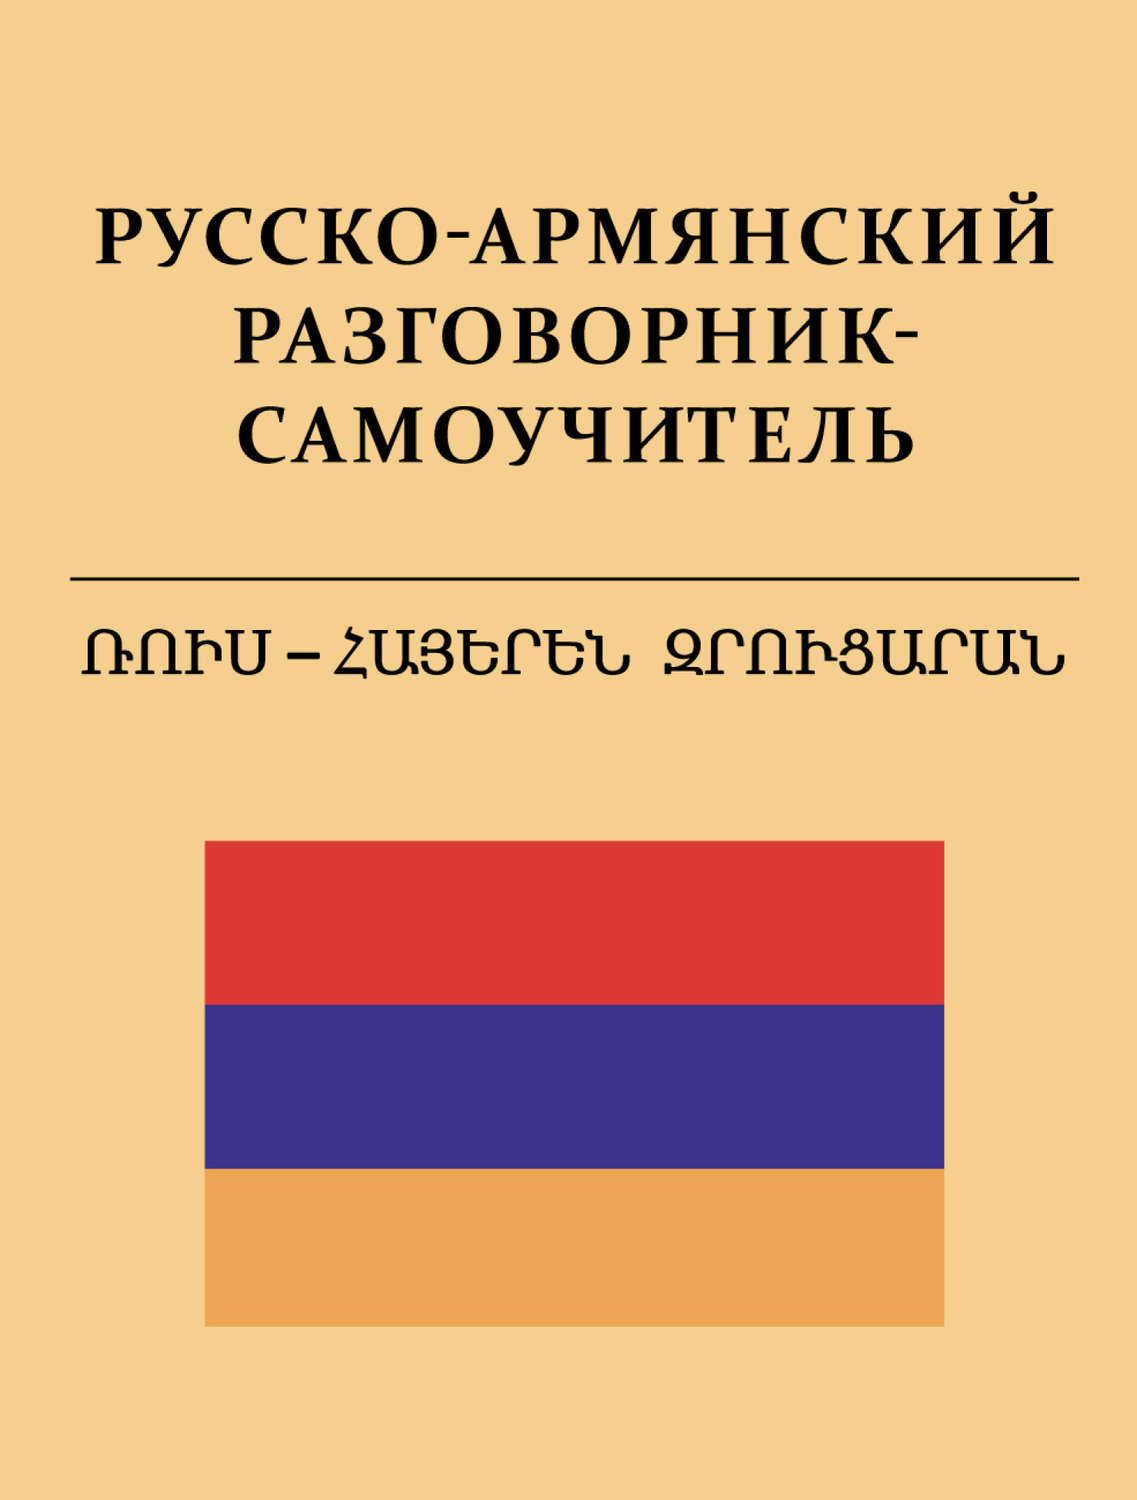 Книги на армянском языке скачать